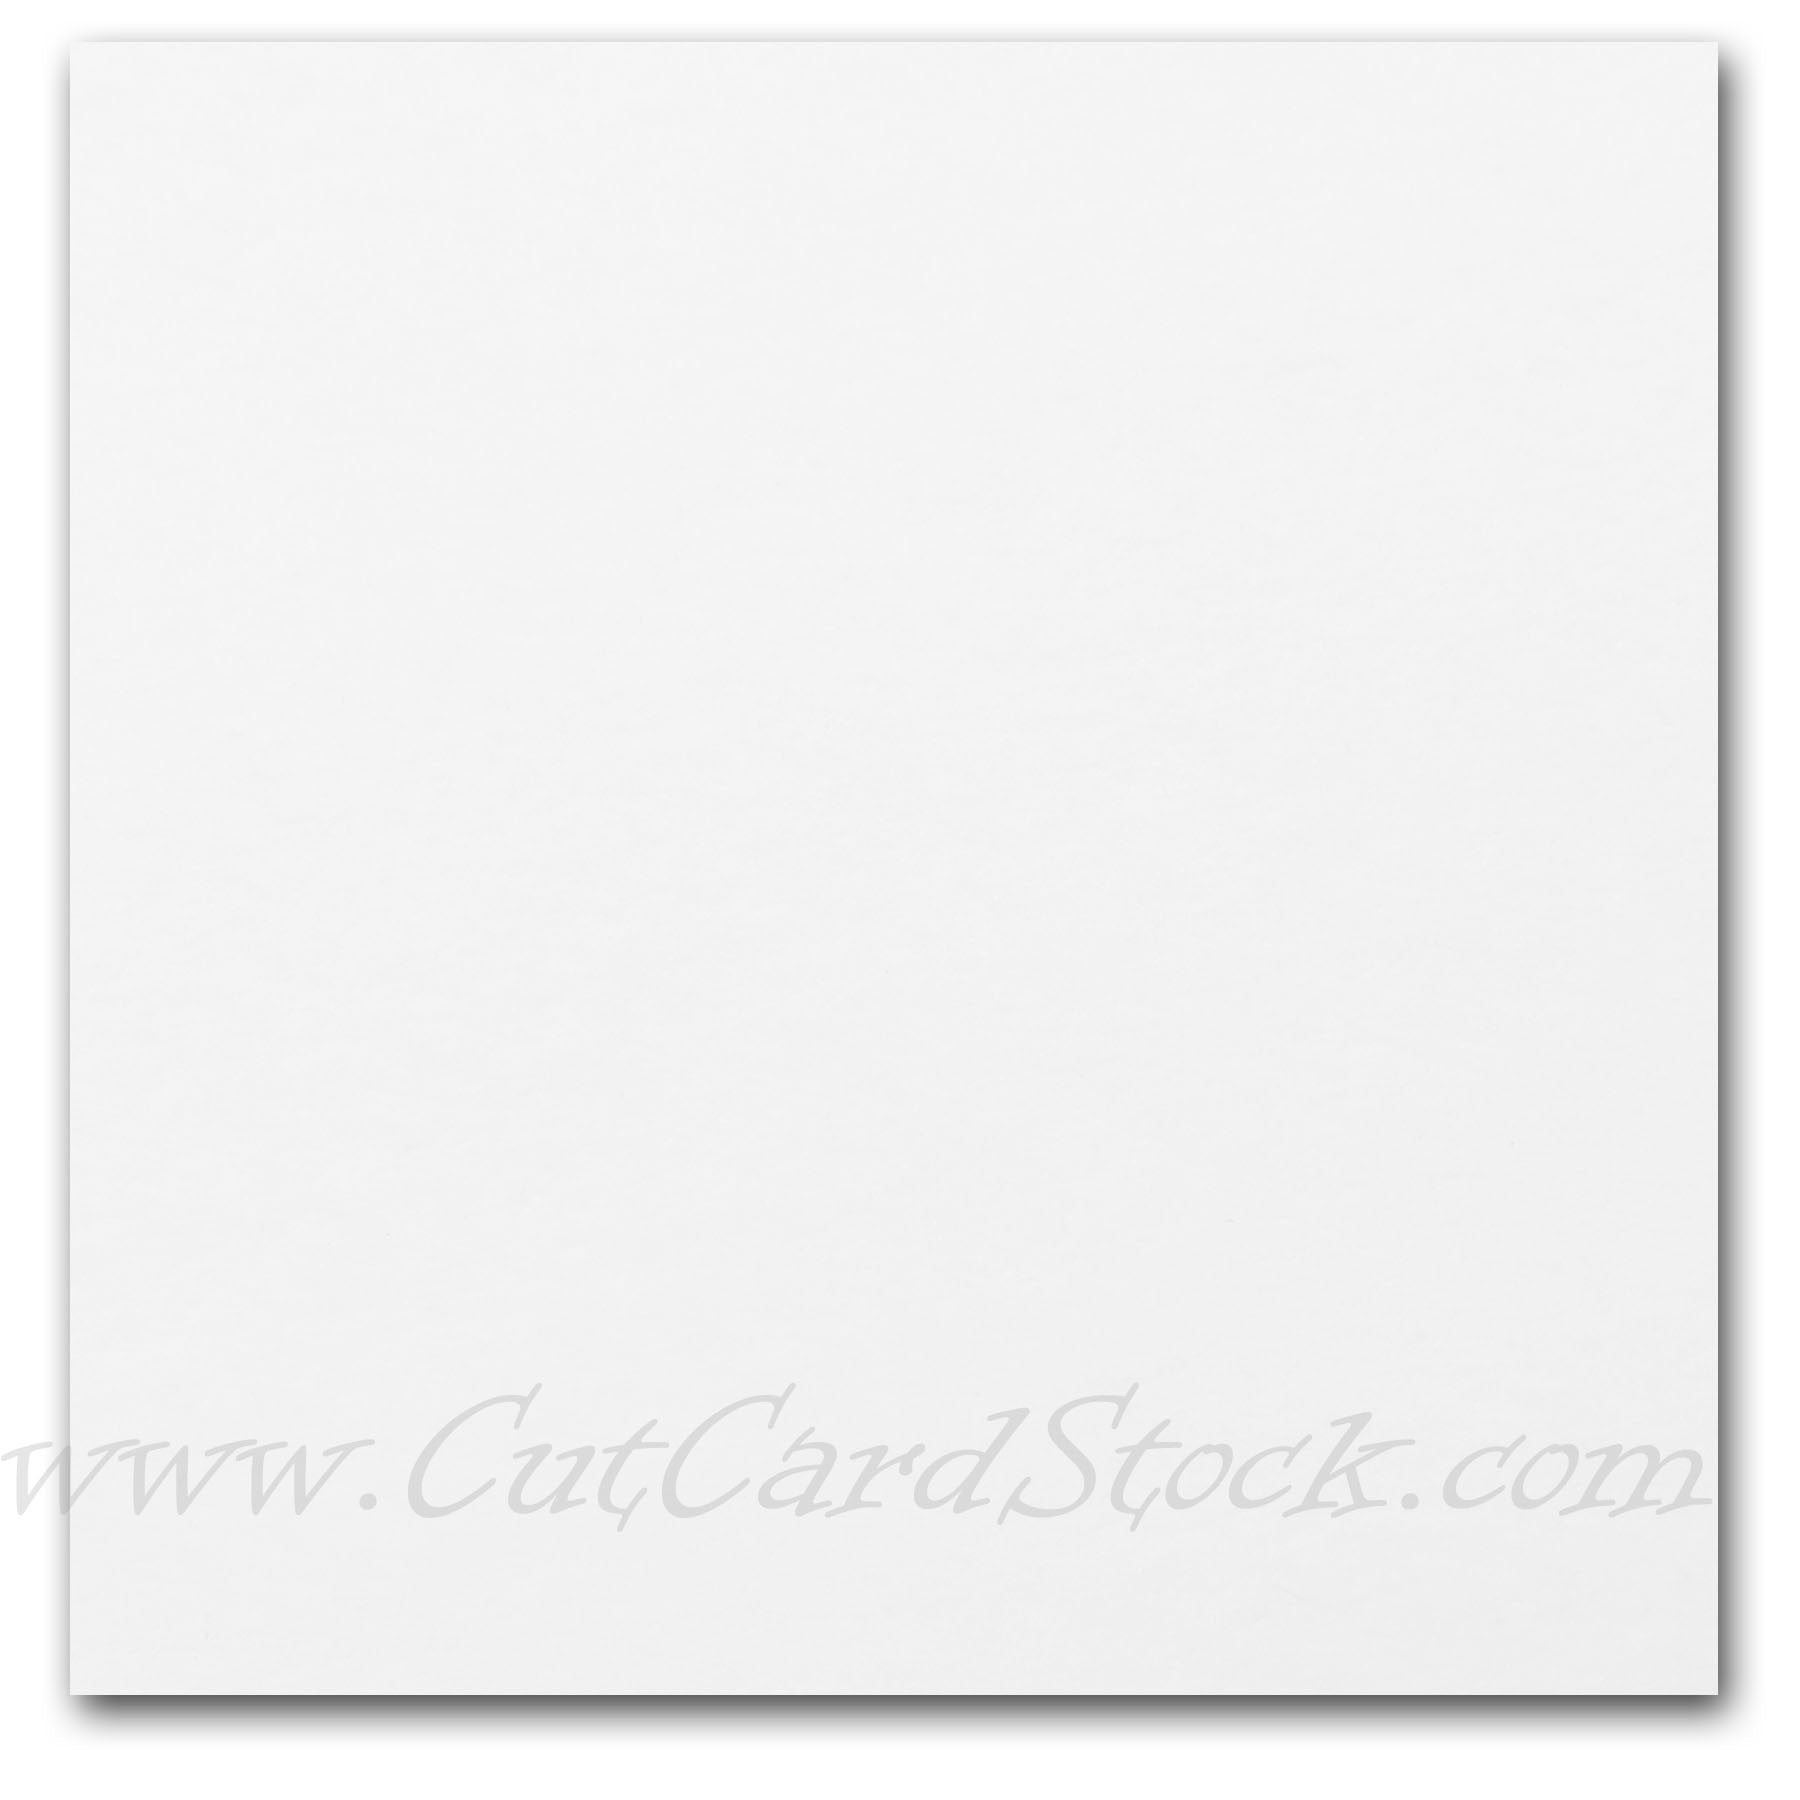 8.5 x 14 Pastel Color Cardstock Paper, Legal Size 67lb Vellum Bristol, 50  Sheets